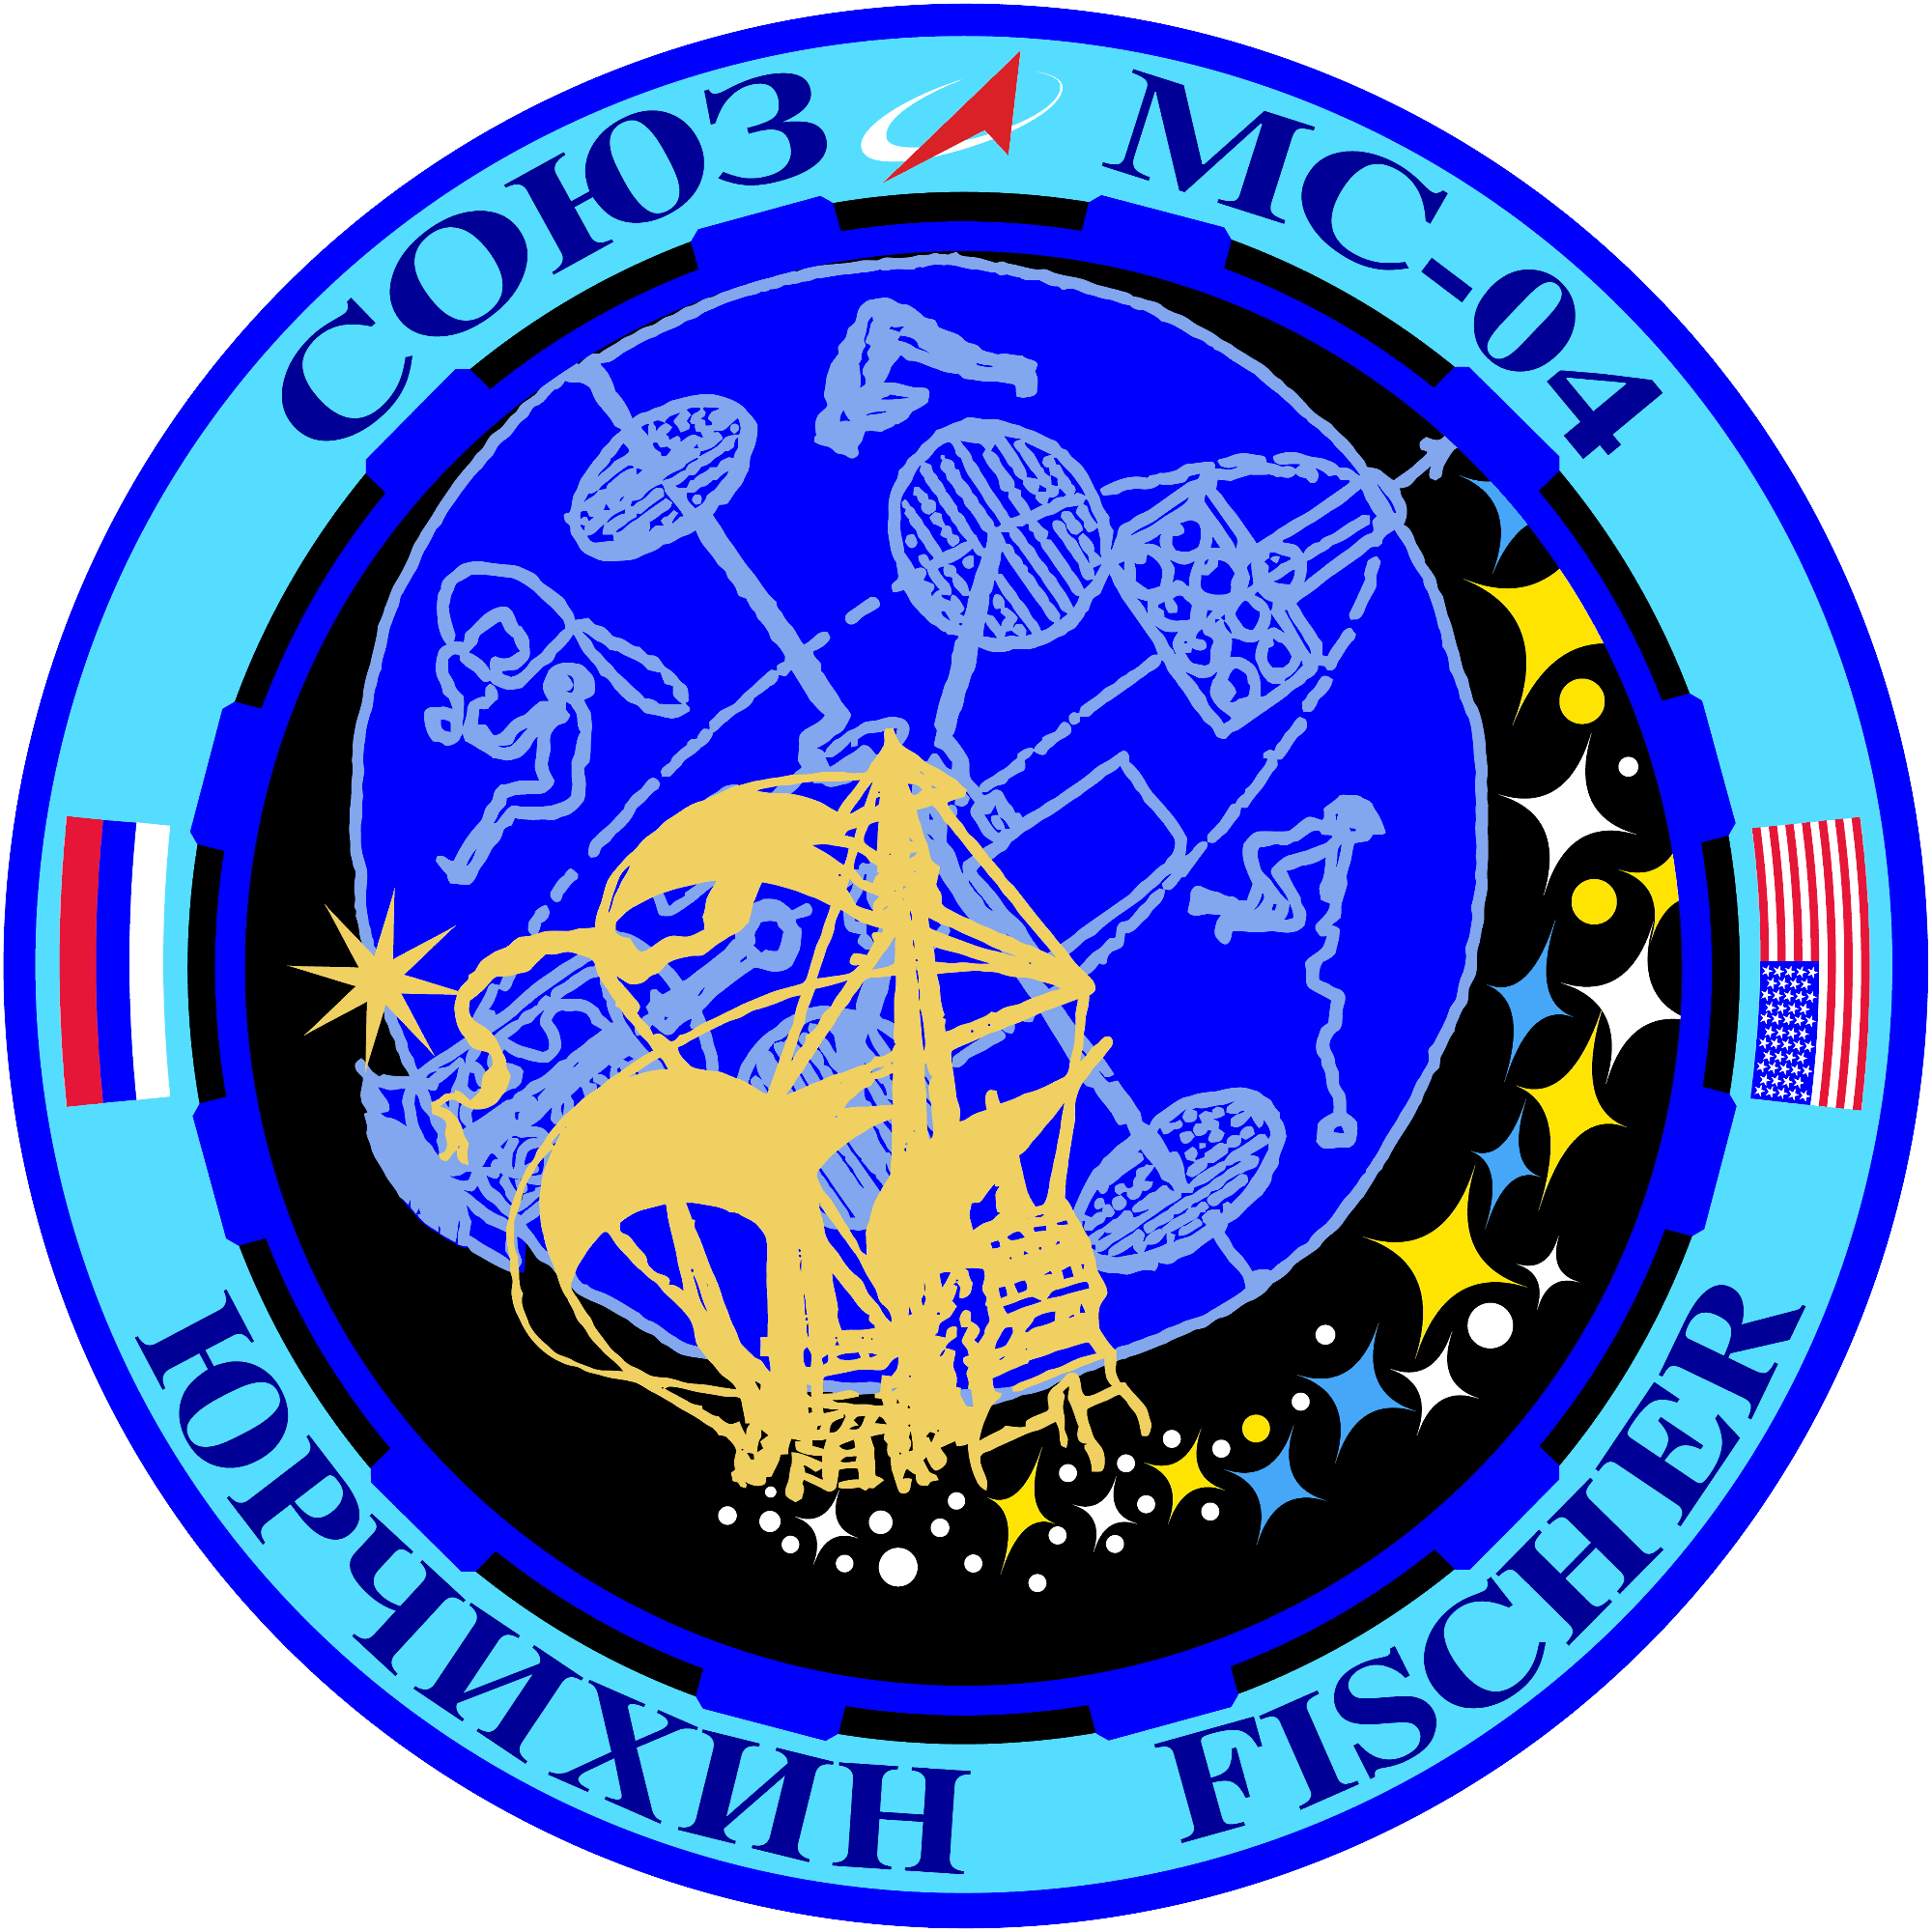 Soyuz MS-04